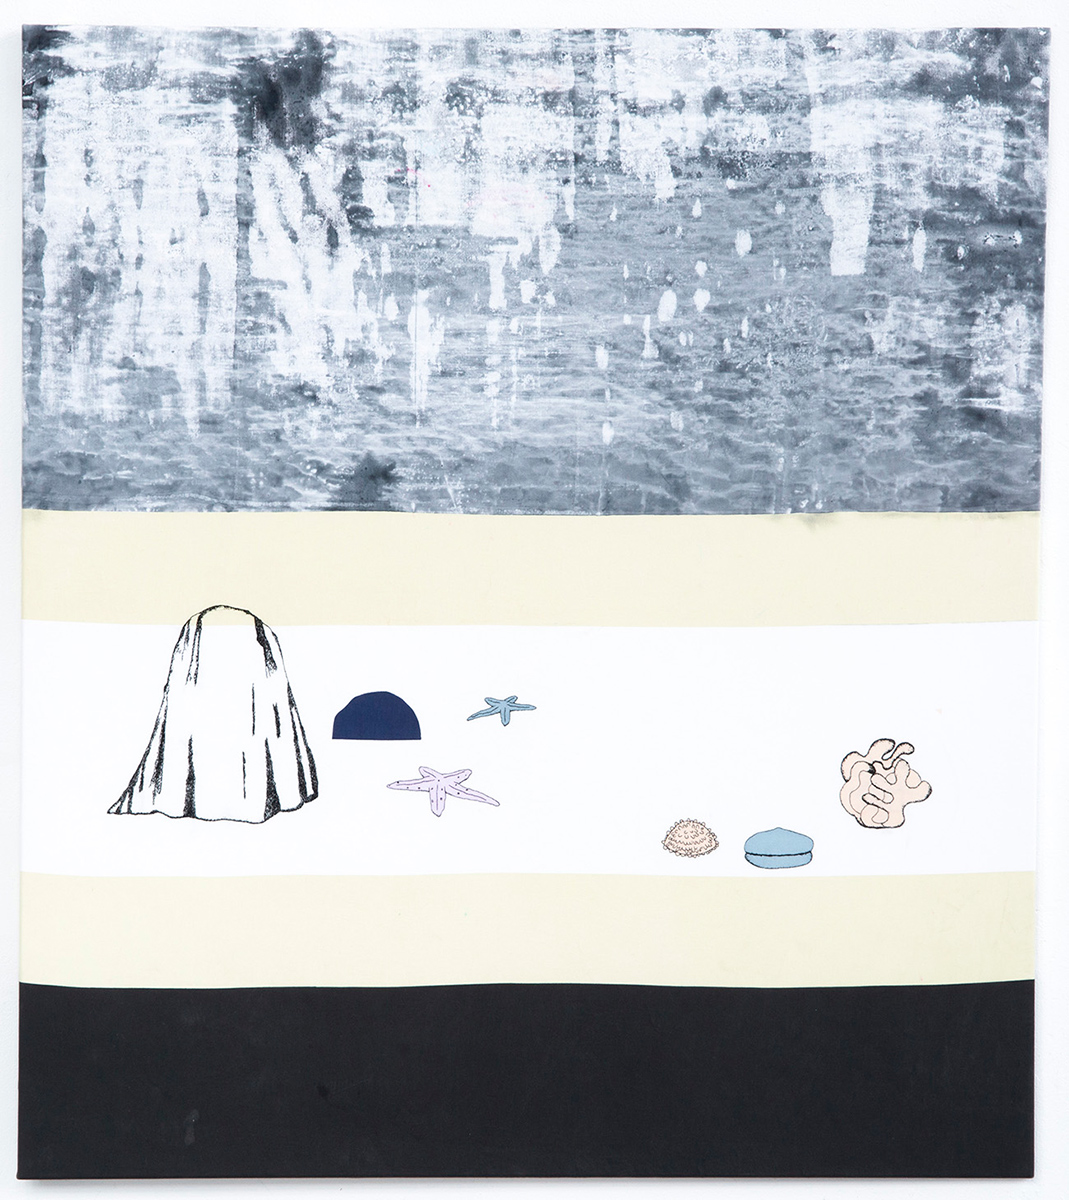 Sofia Brolin, Stranden, textil, 120 x 135 cm. Pris: 16.000:-